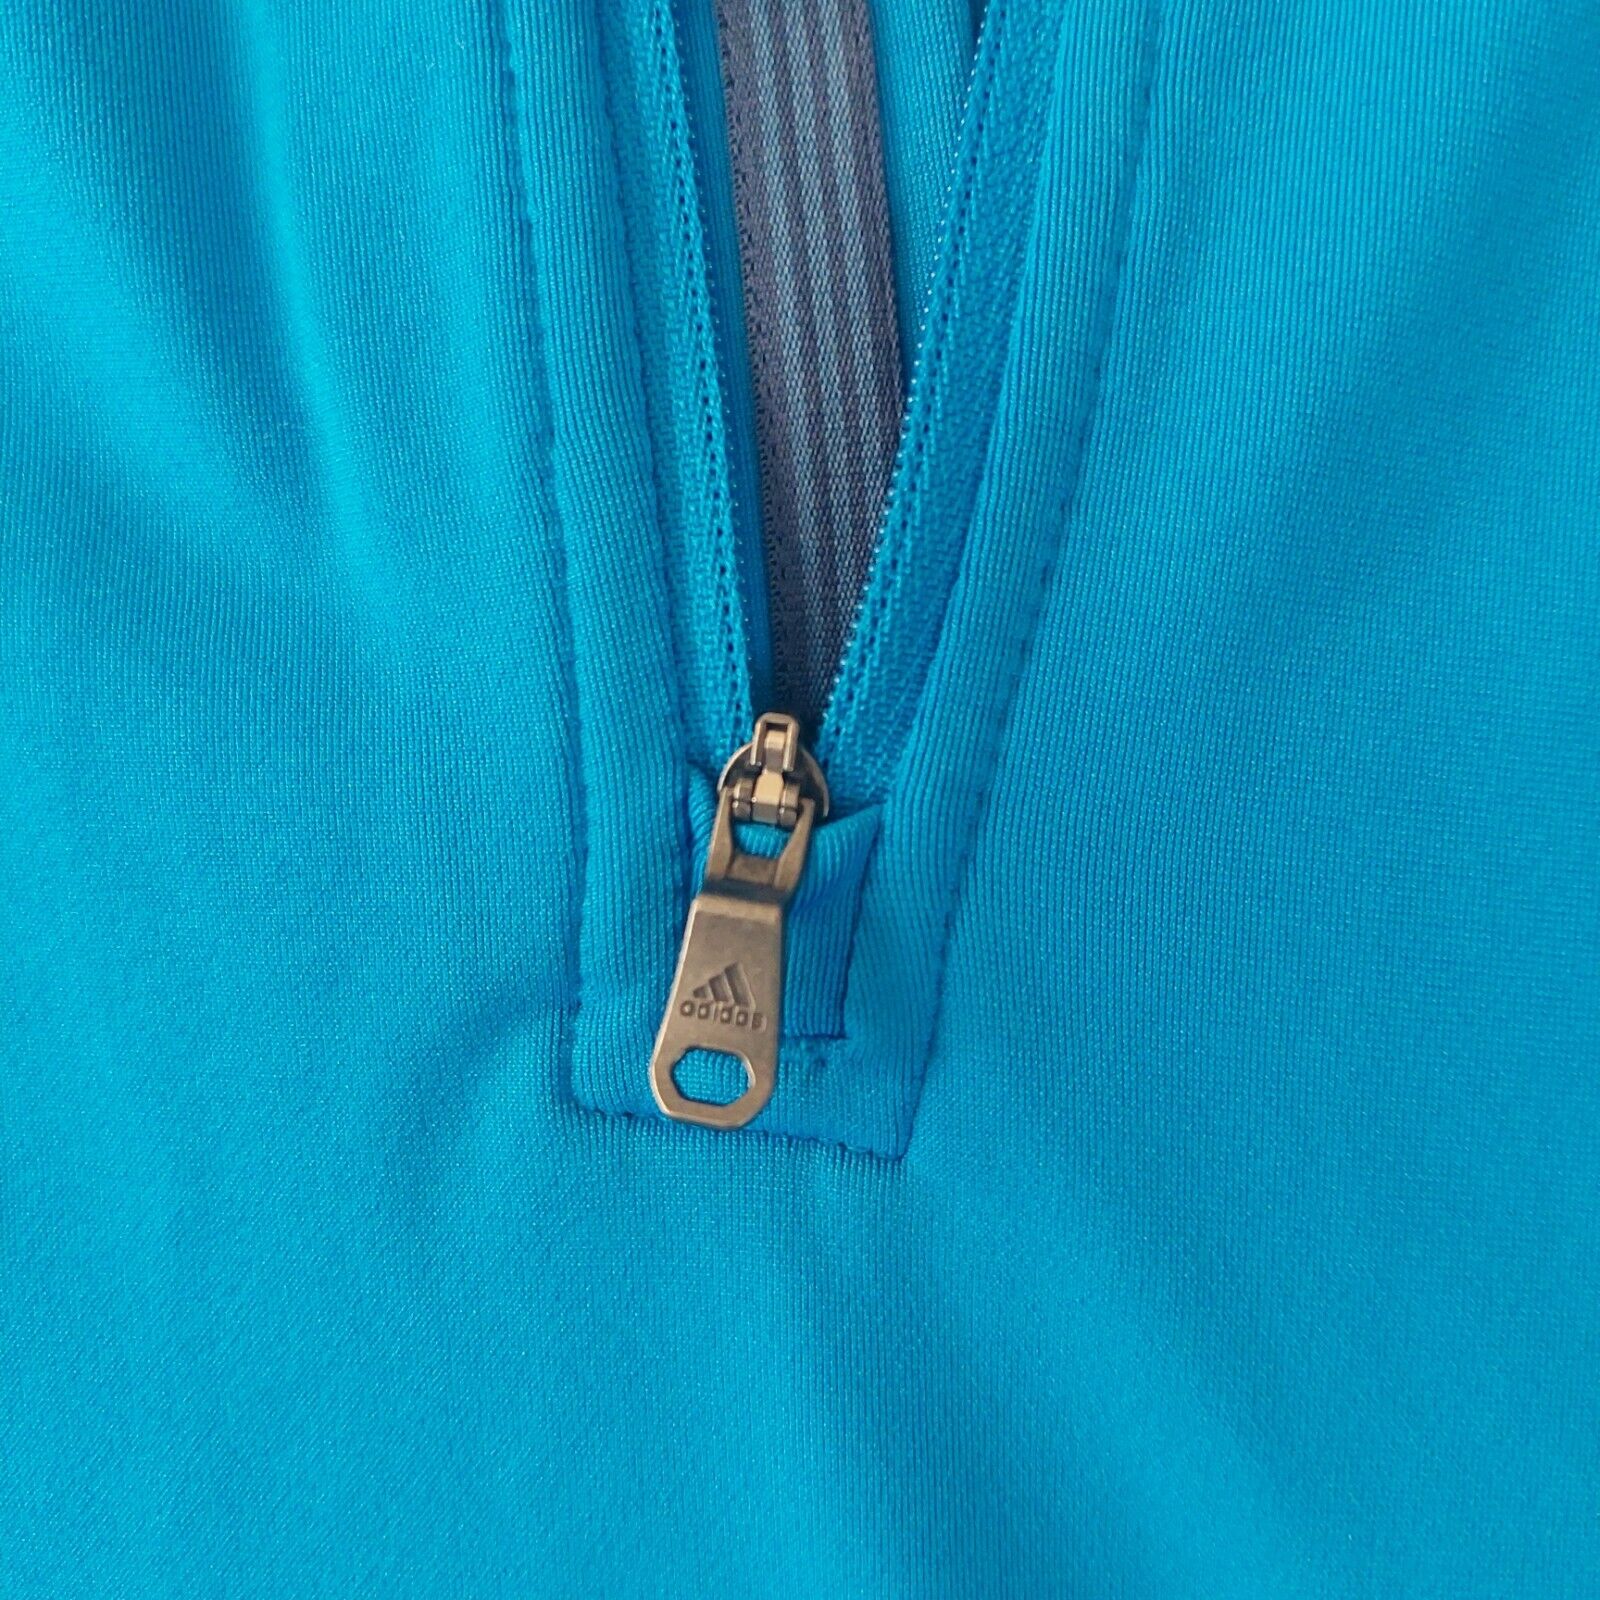 Chillido carbón Con otras bandas Adidas Originals Men&#039;s 3 STRIPES Sweatshirt Blue - Size XL - (DV1555)  | eBay